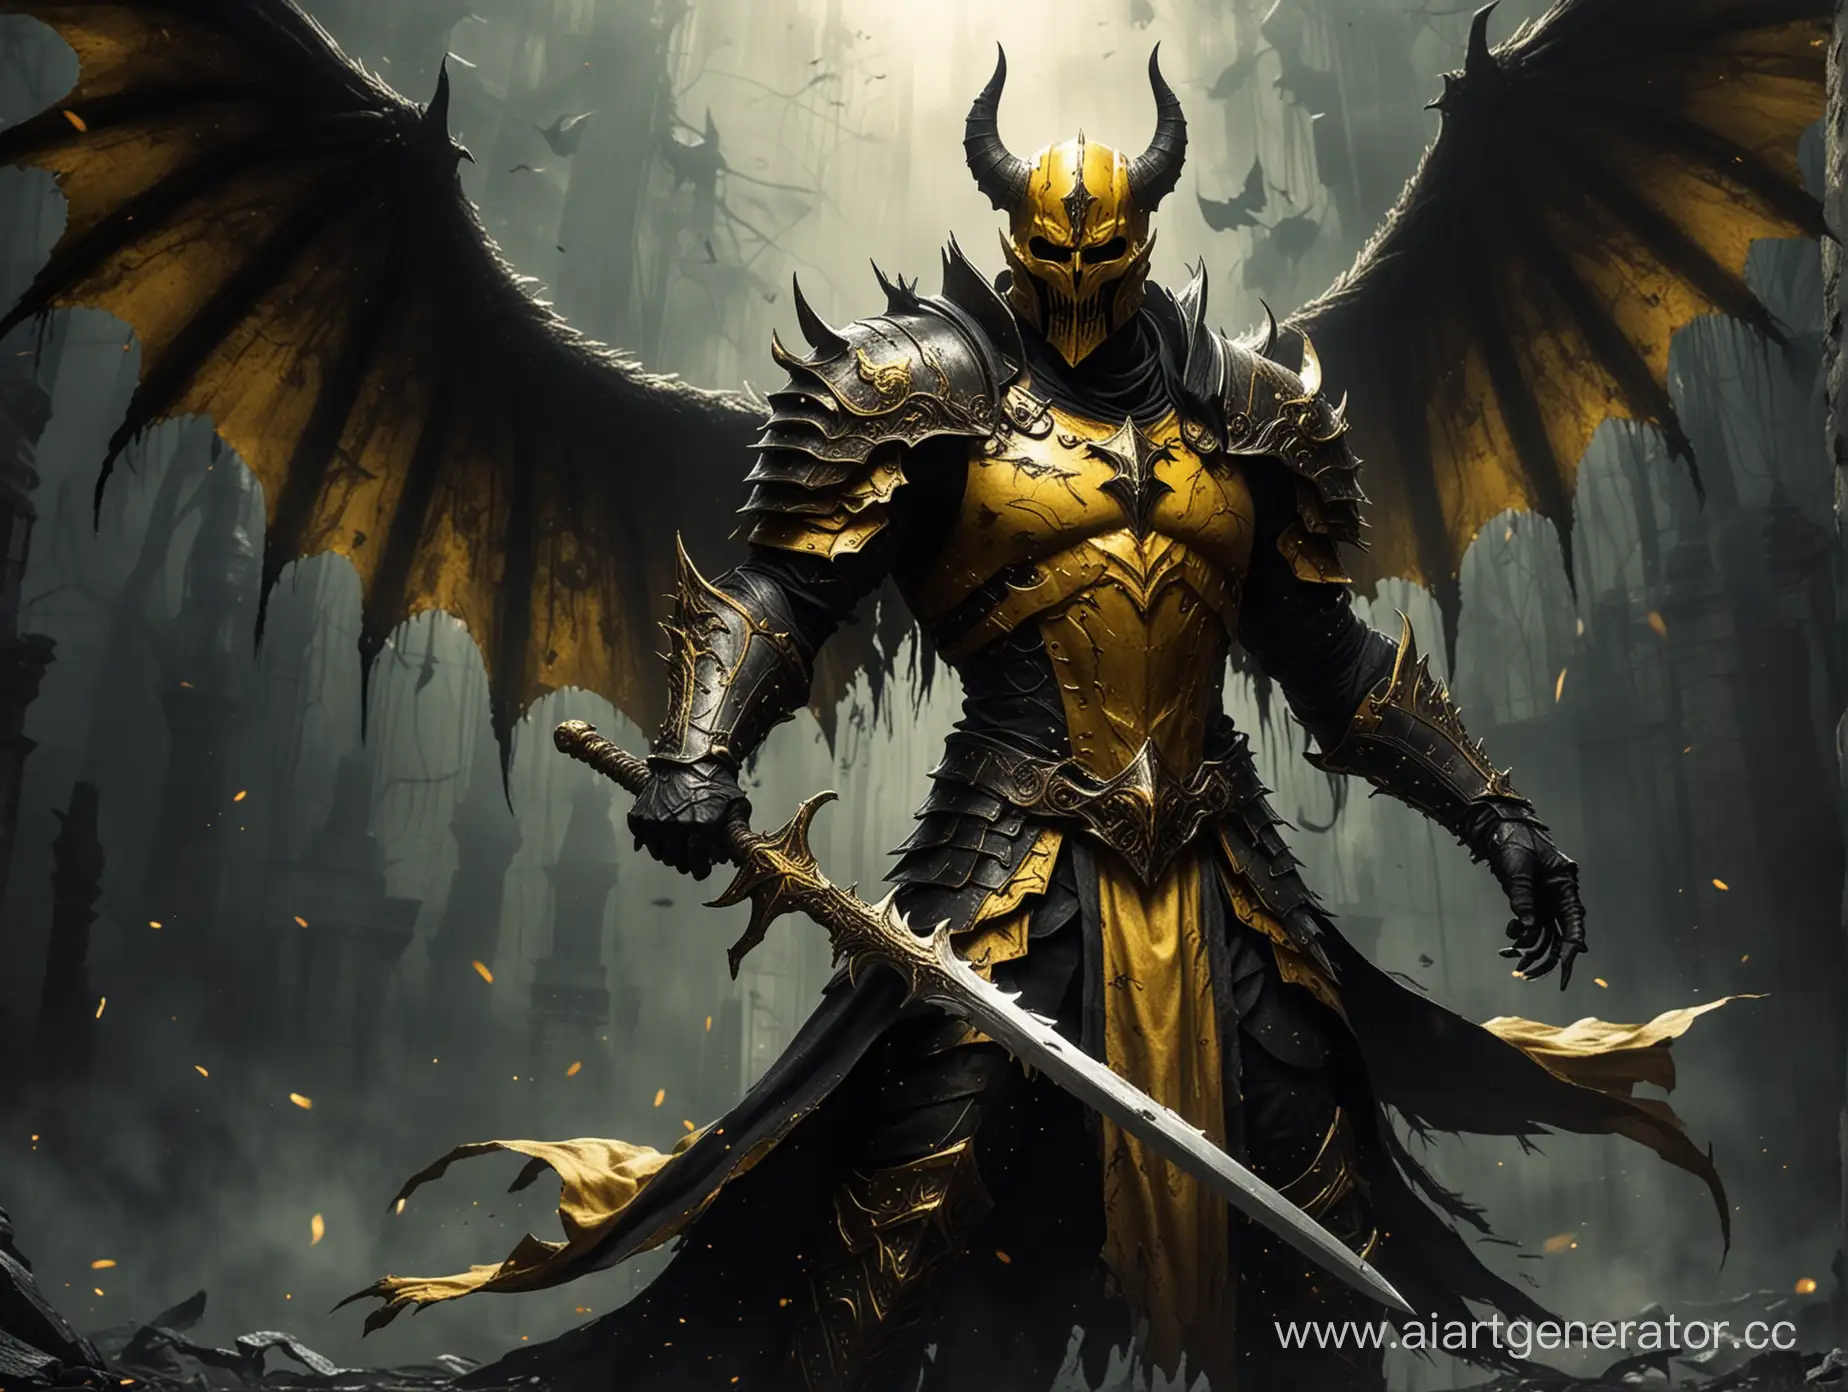 желтый рыцарь держит золотой  меч в руках ,крылья демона чëрно-жёлтые, в стиле хоррор